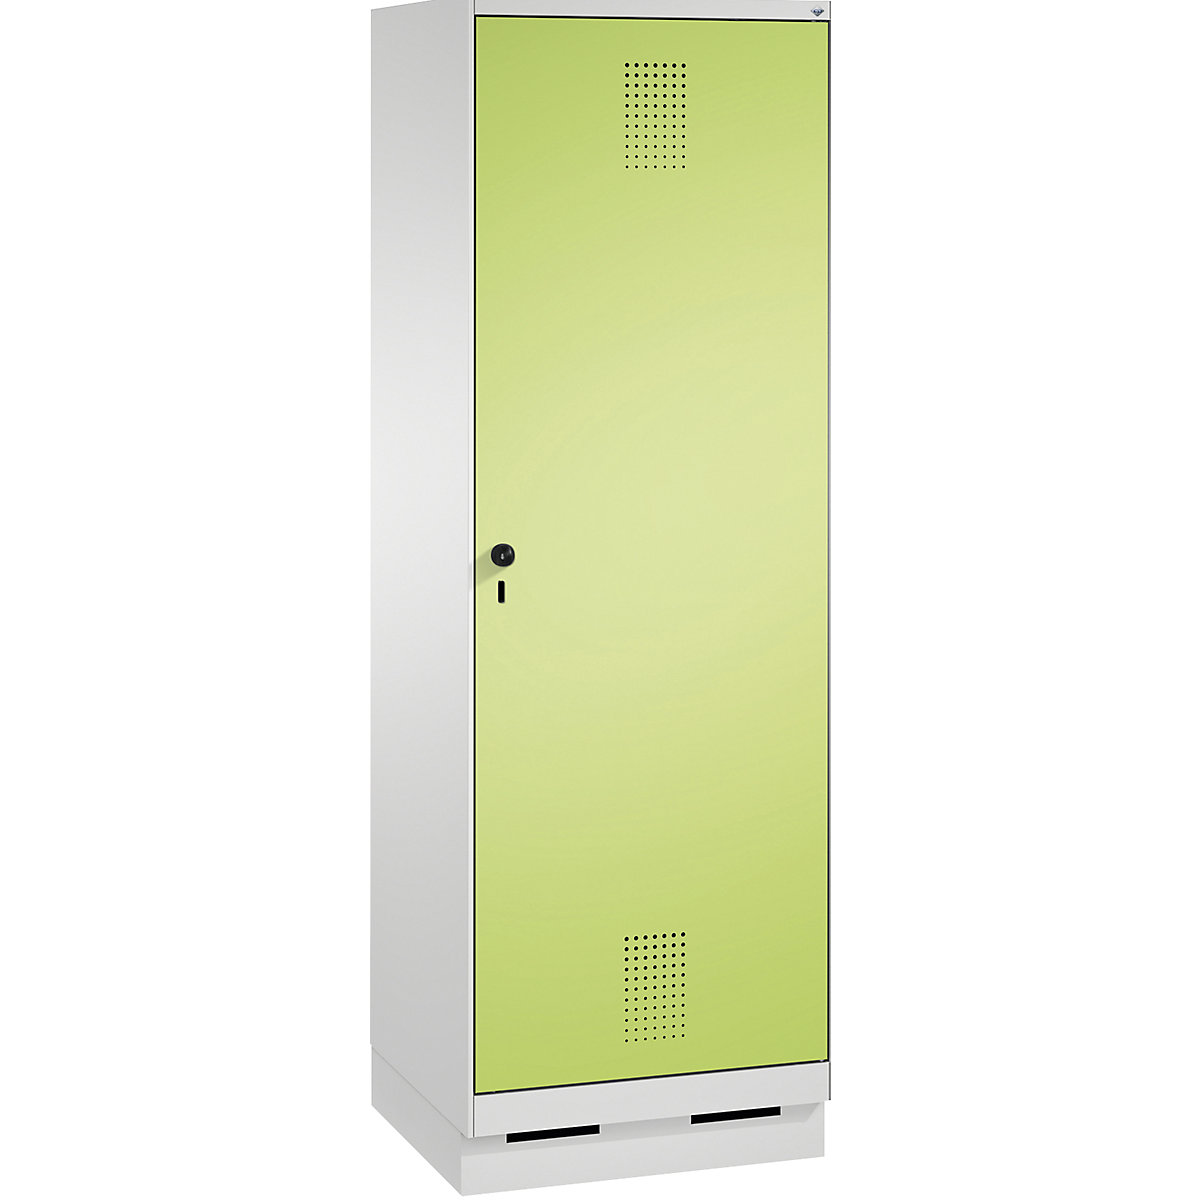 Garderobna omara EVOLO, vrata čez 2 predelka, s podnožjem – C+P, 2 razdelka, 1 vrata, širina razdelka 300 mm, svetlo siva / rumeno zelena-4